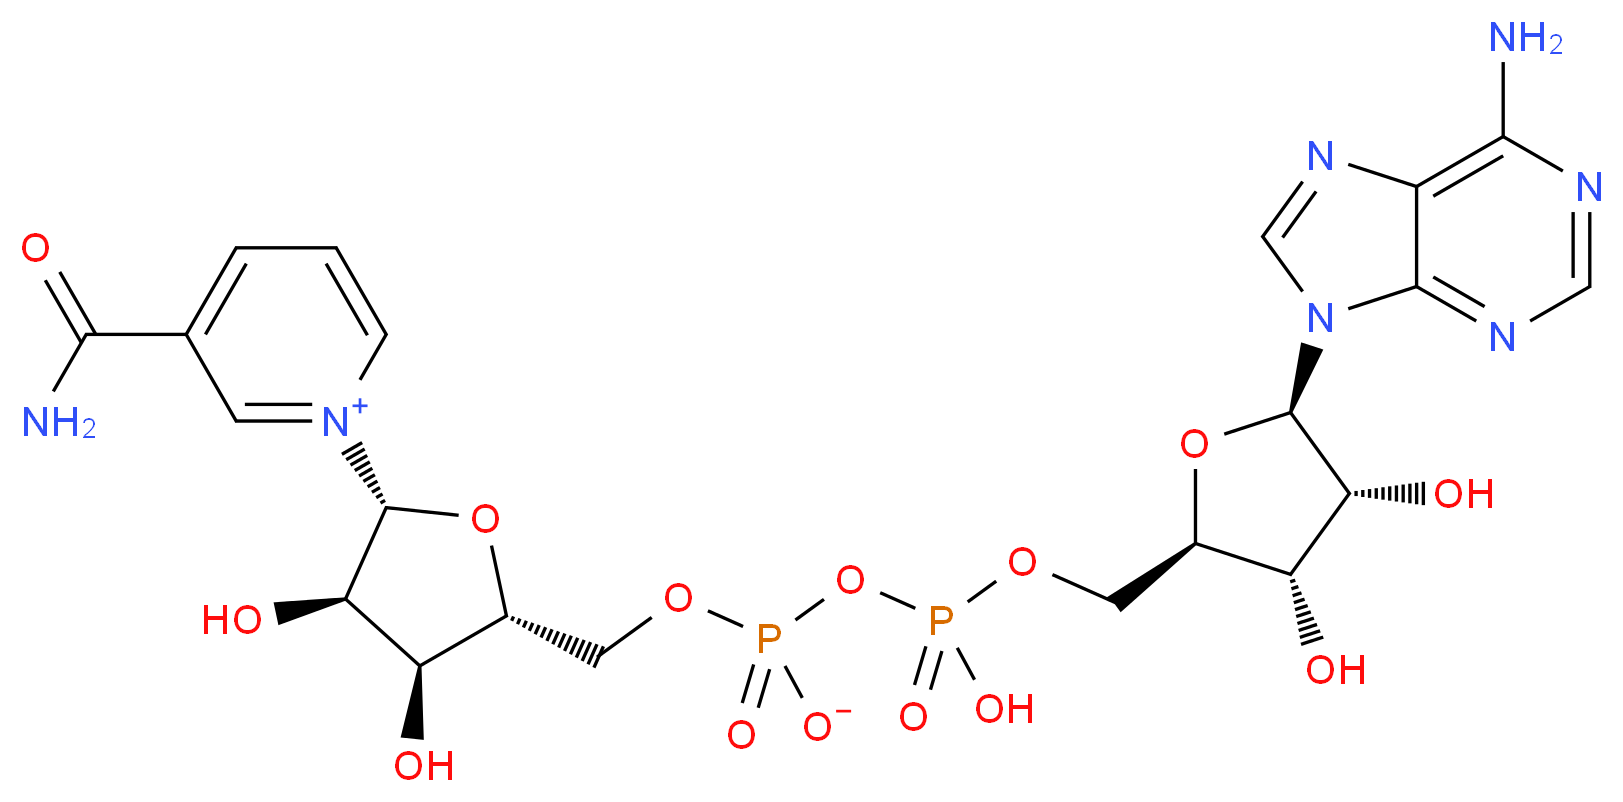 β-Nicotinamide adenine dinucleotide_Molecular_structure_CAS_53-84-9)